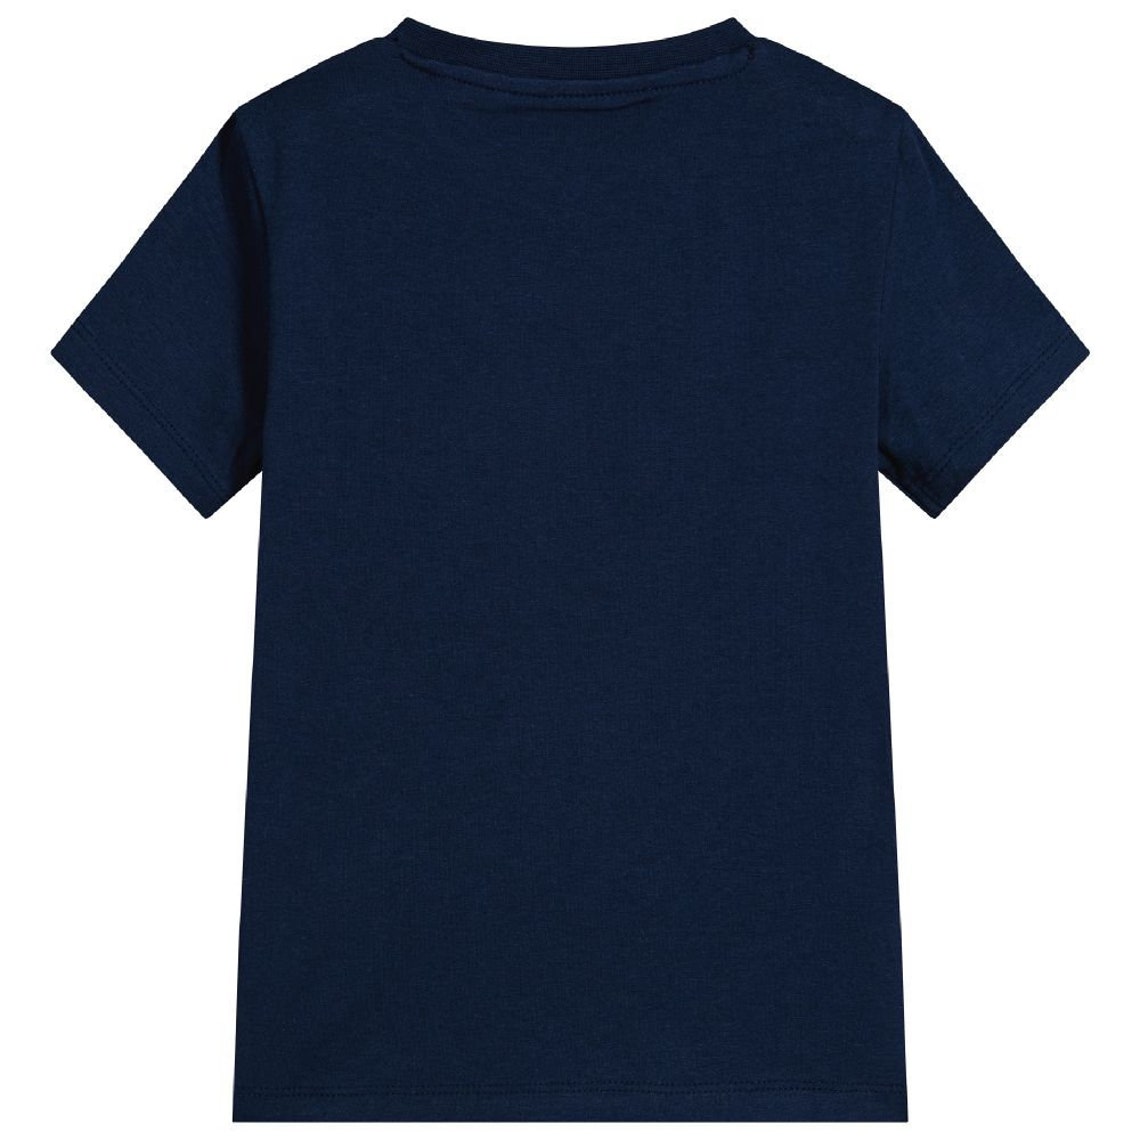 Mockup T Shirt Navy